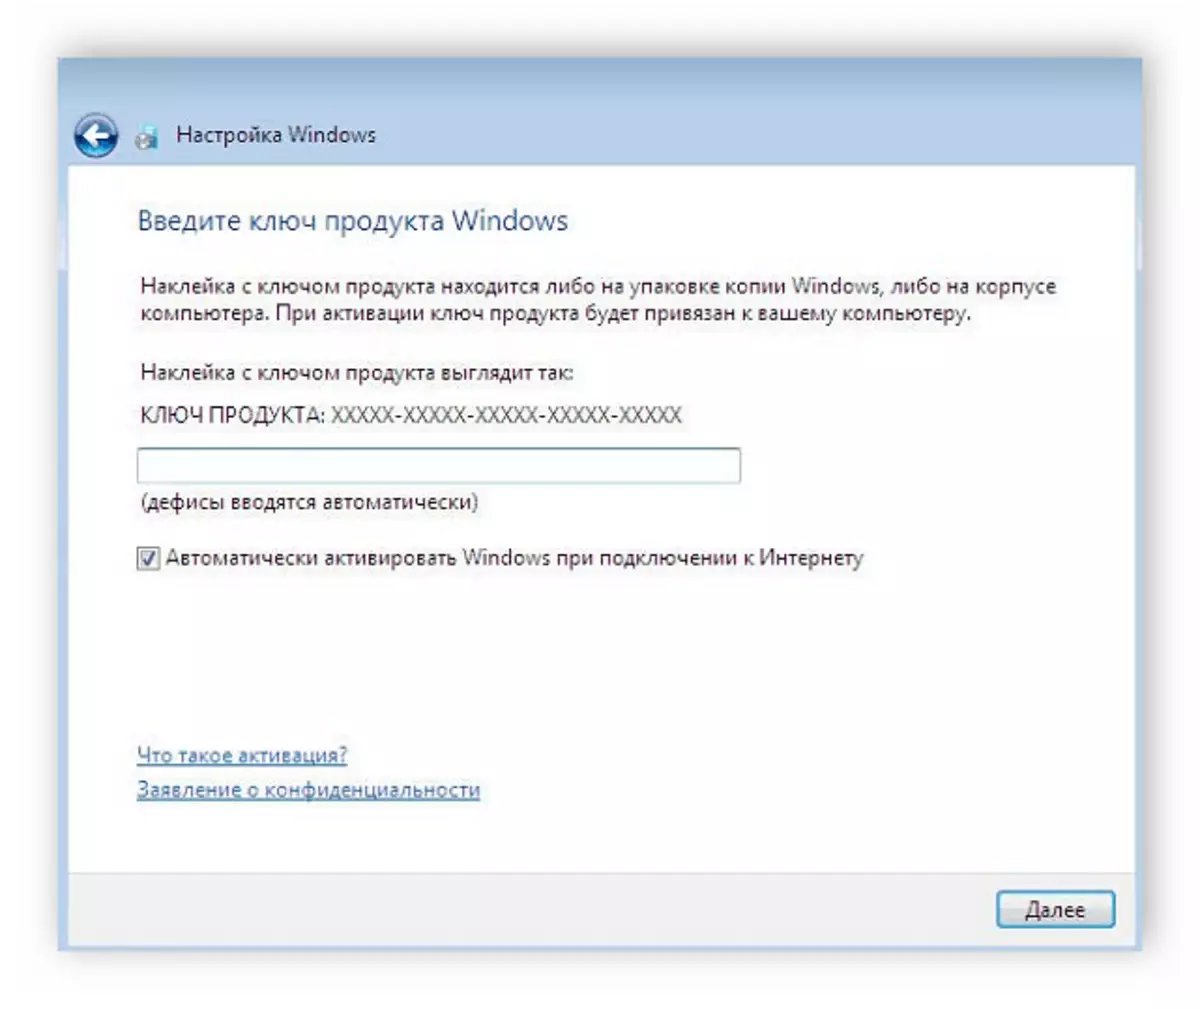 በ Windows 7 መስኮት ለመክፈት ቁልፍ ያስገቡ